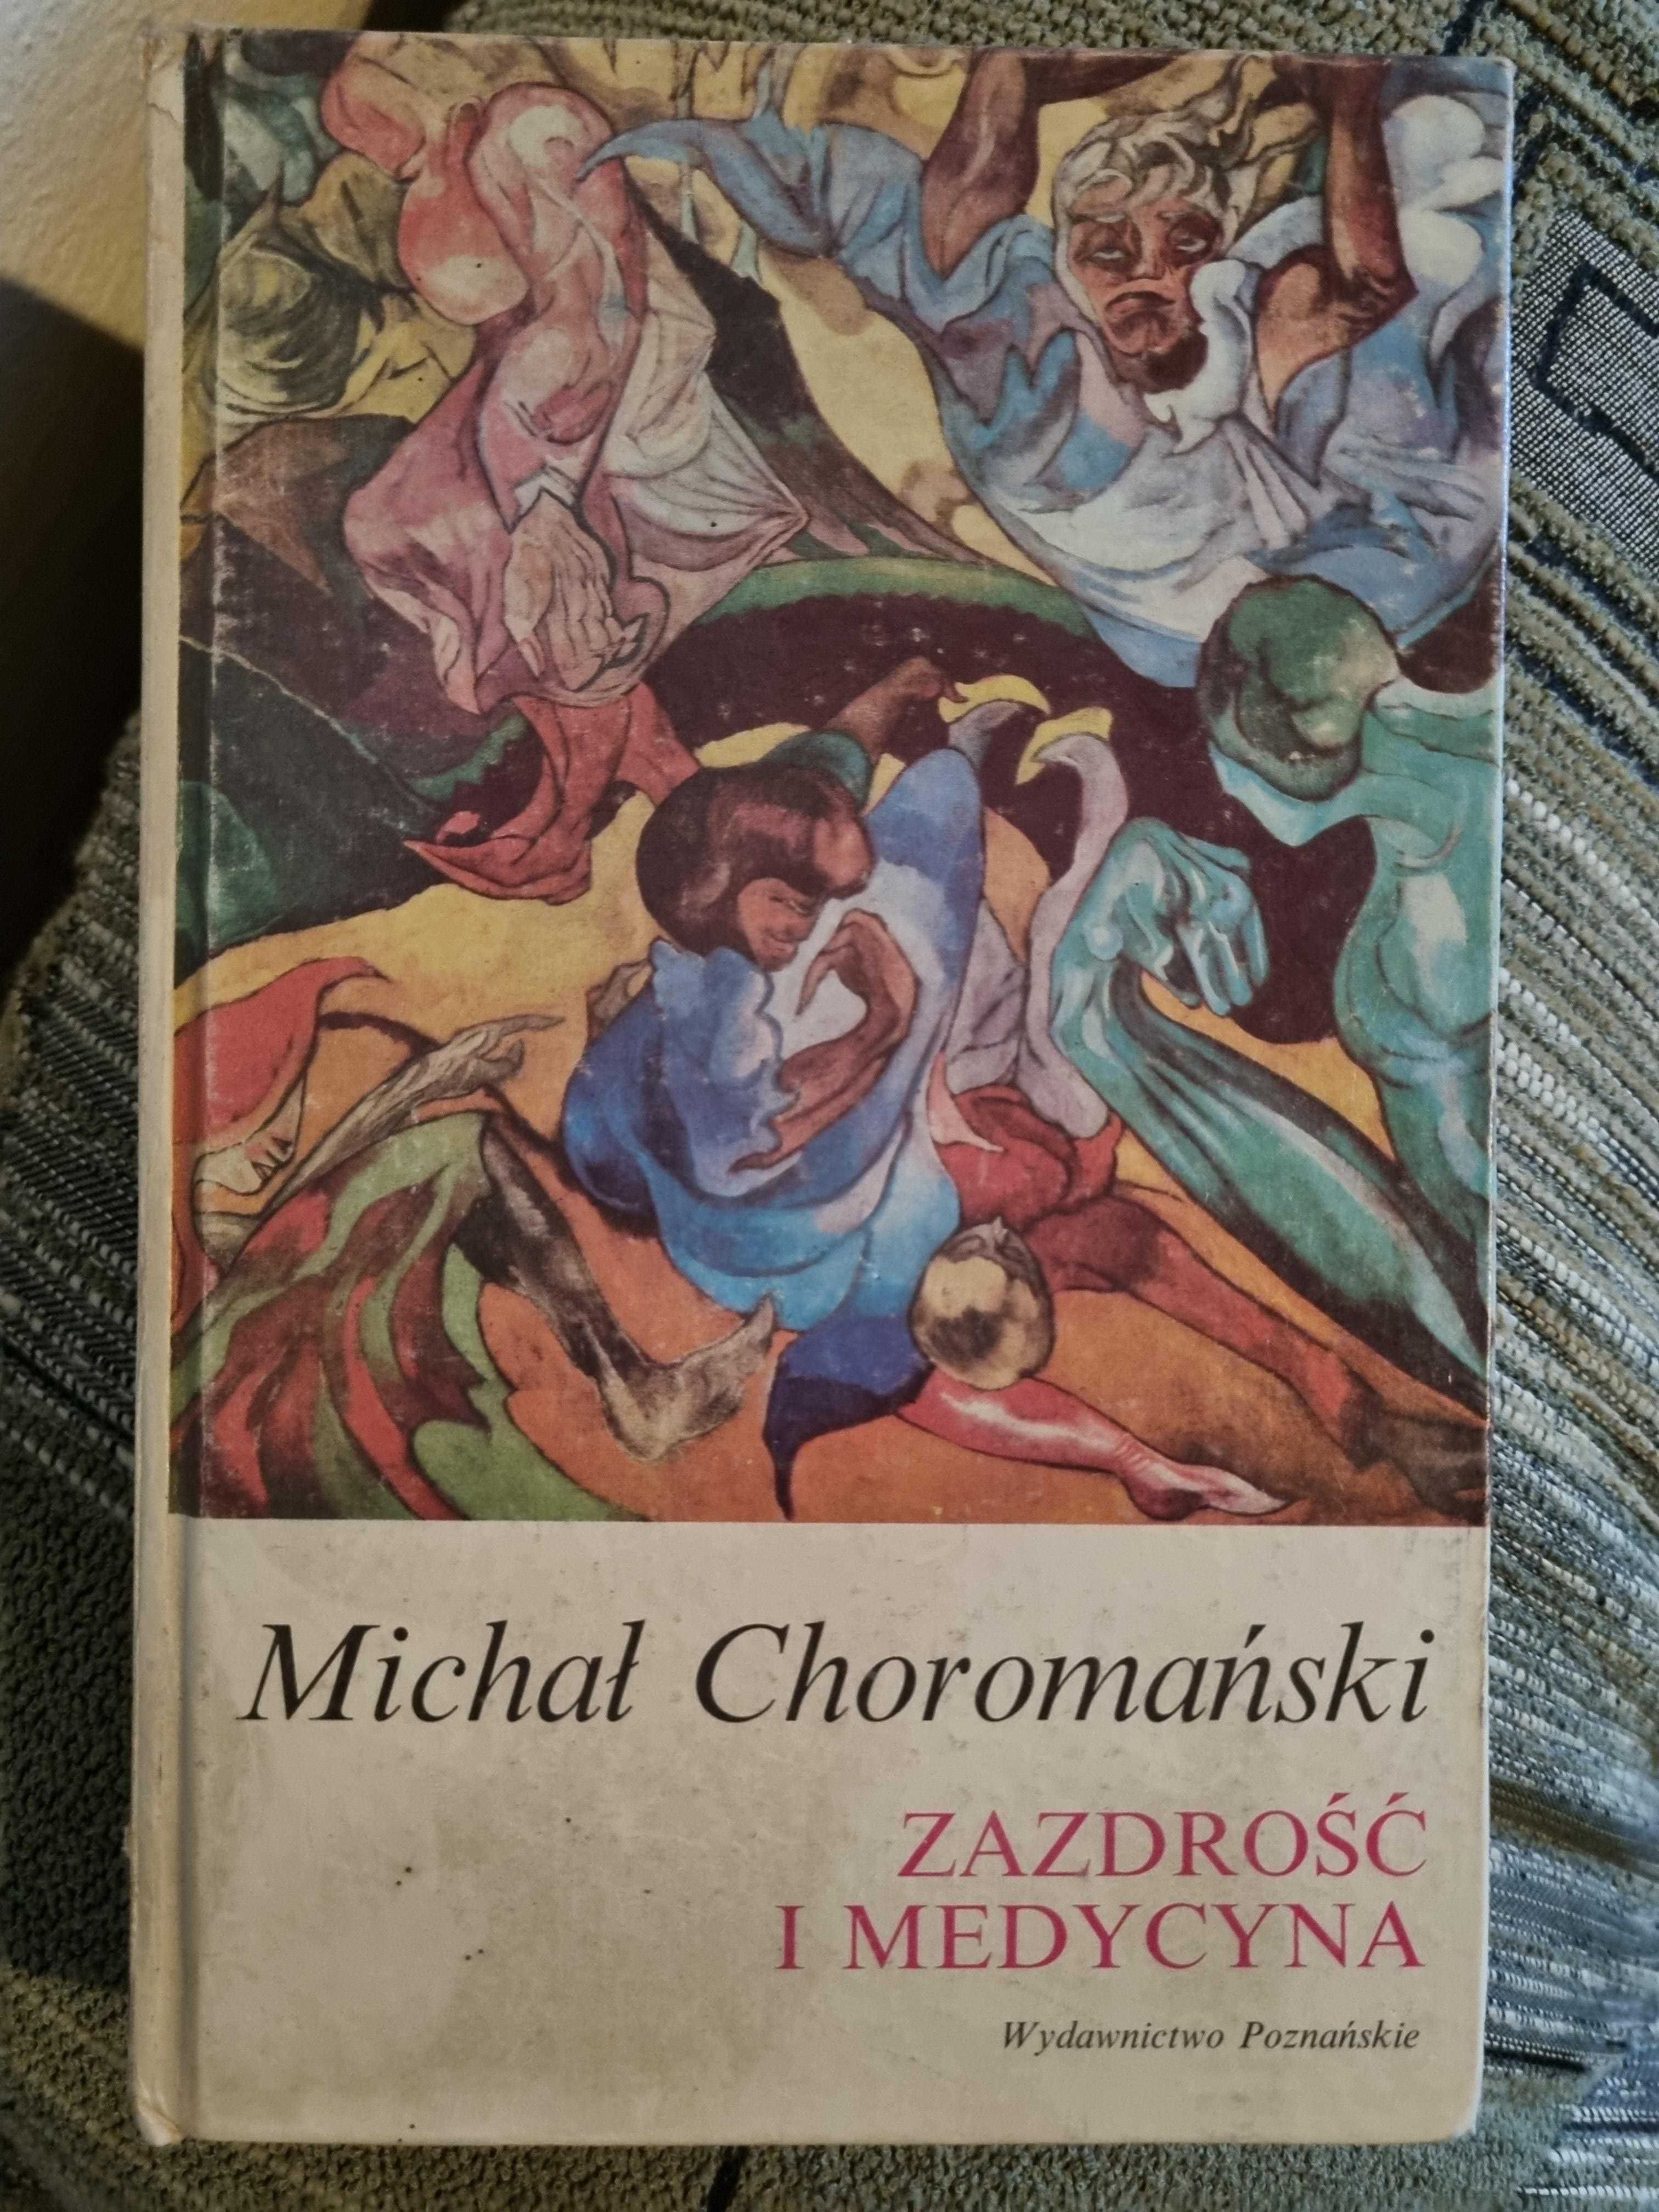 Zazdrość i medycyna, Michał Choromański, 1990r